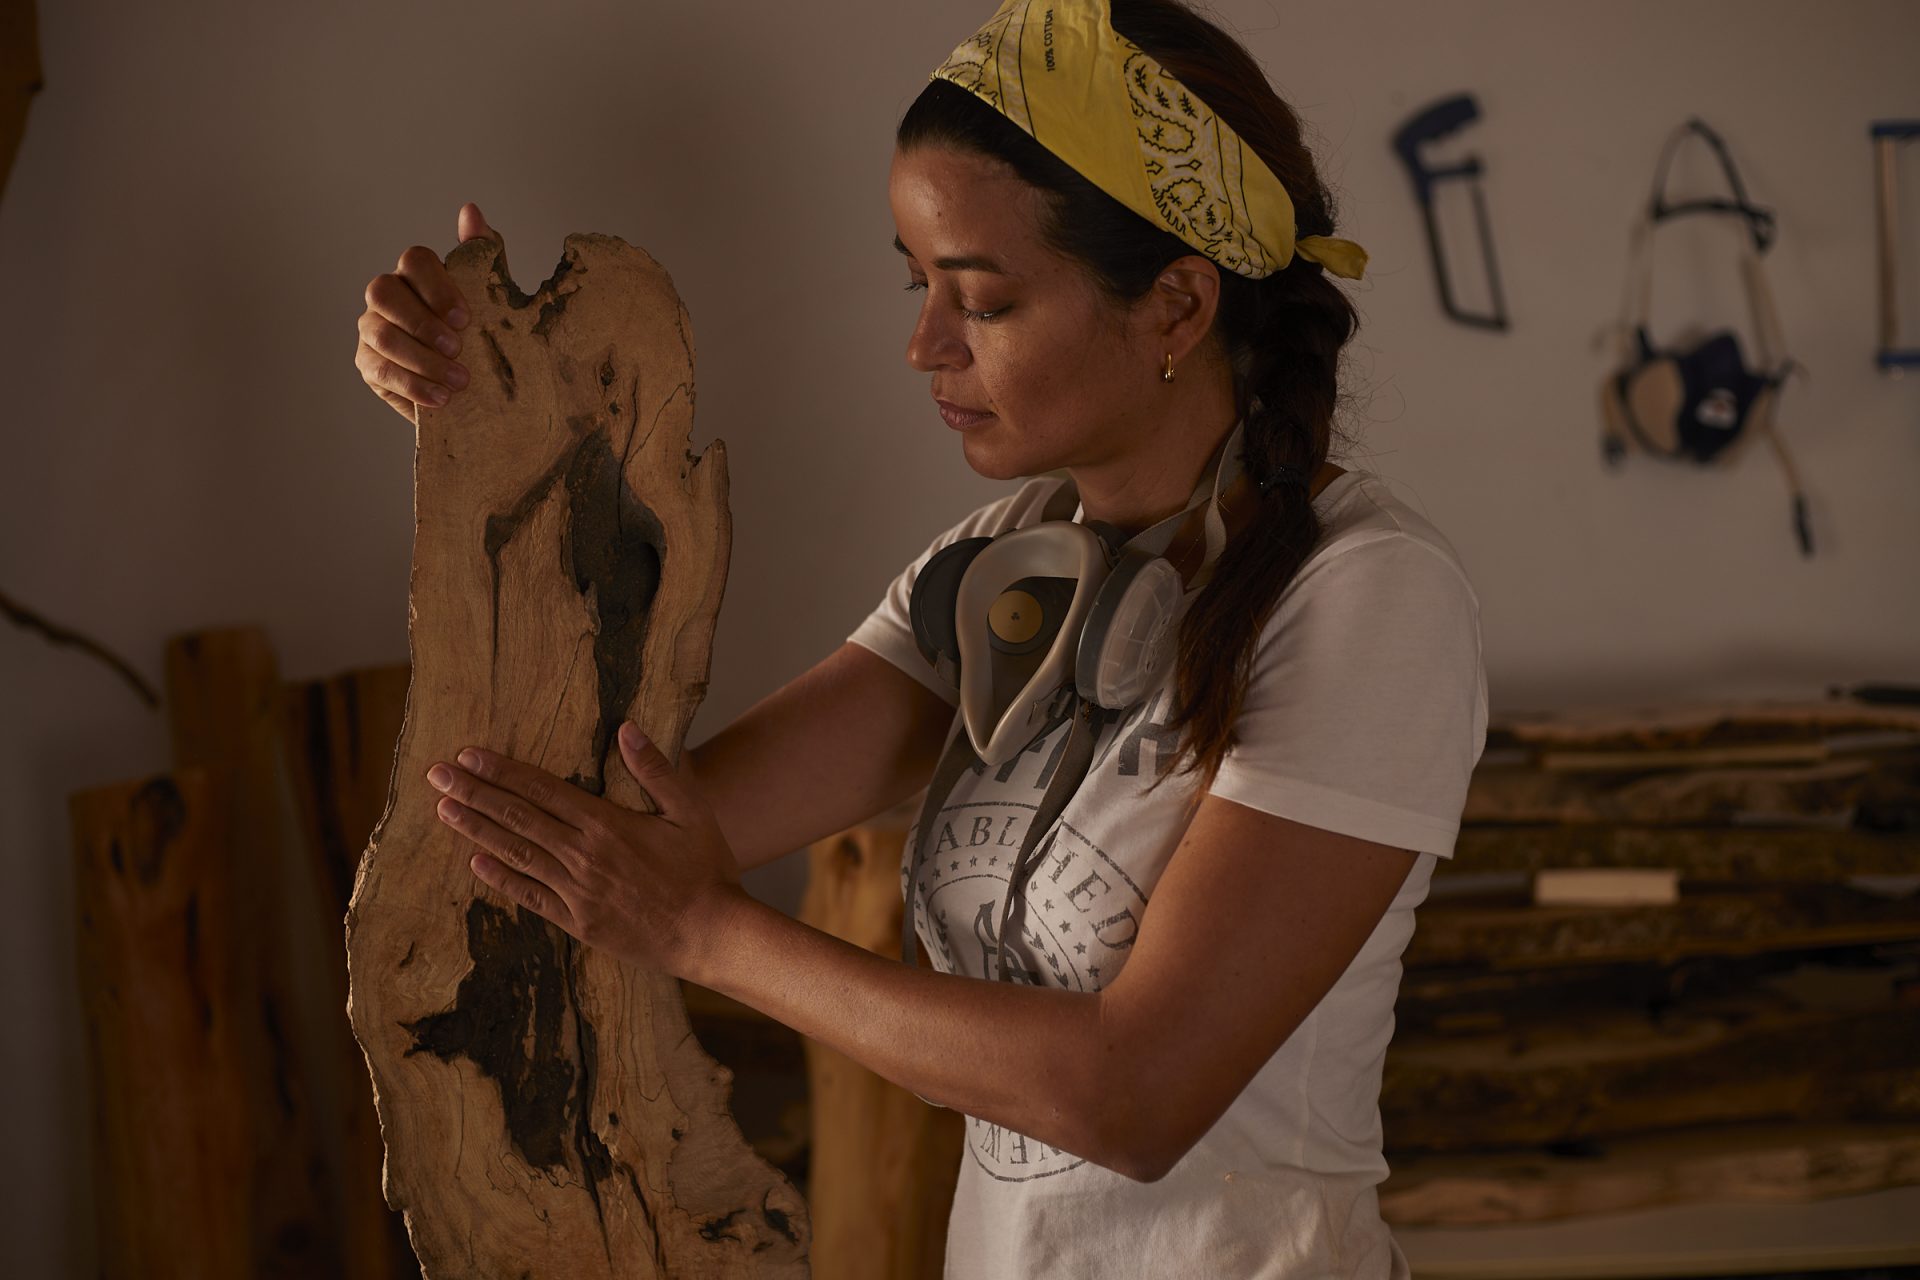 Artesana examinando una pieza de madera en su taller.